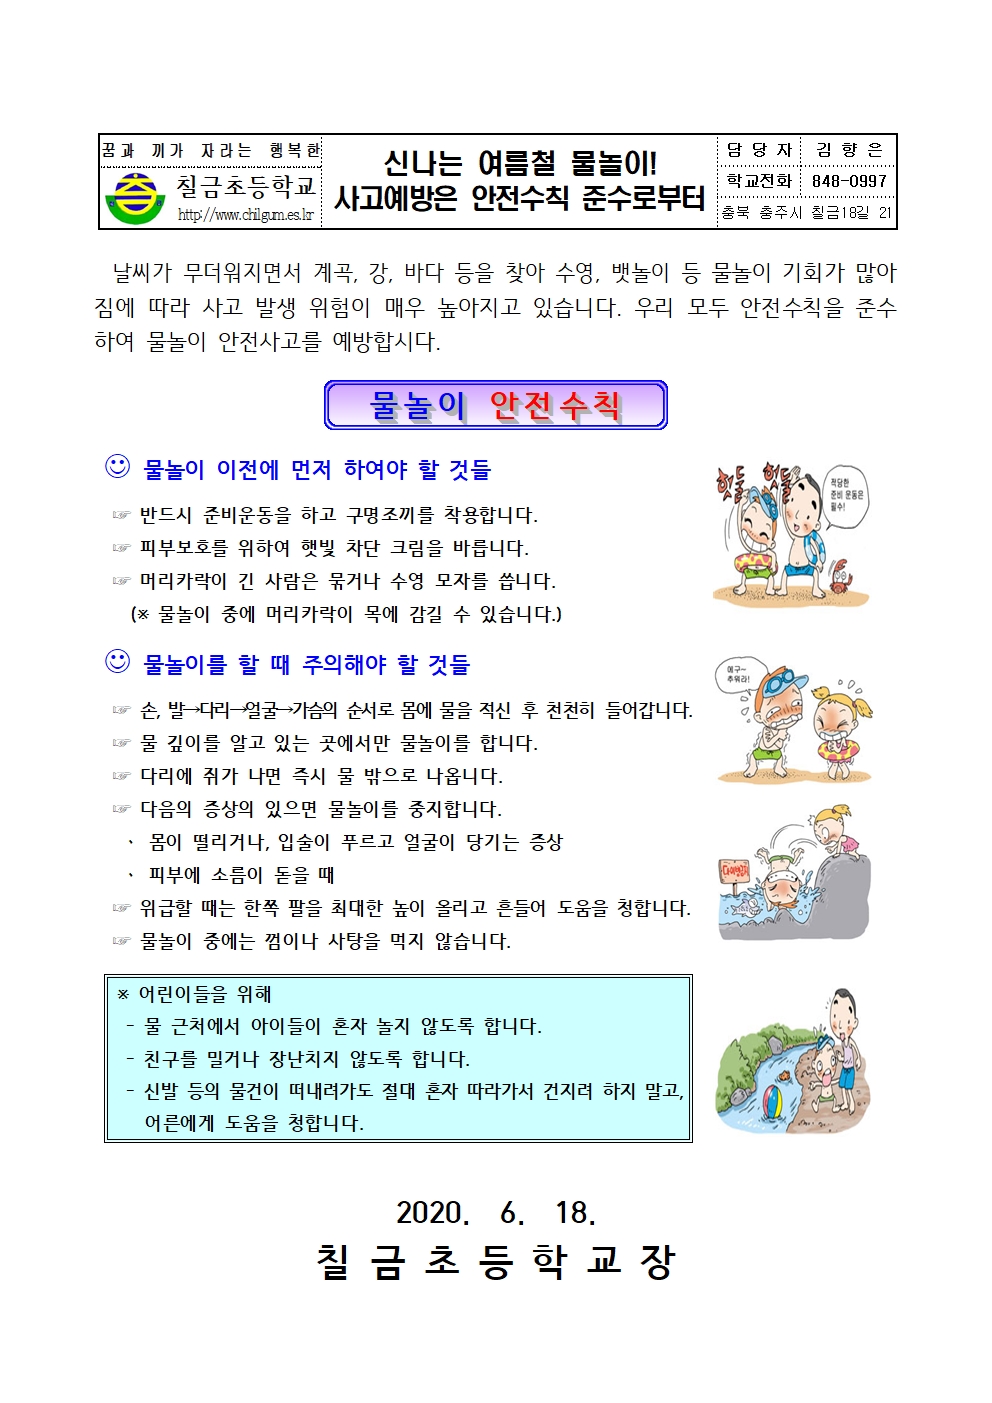 2020. 물놀이 안전사고 예방 가정통신문001